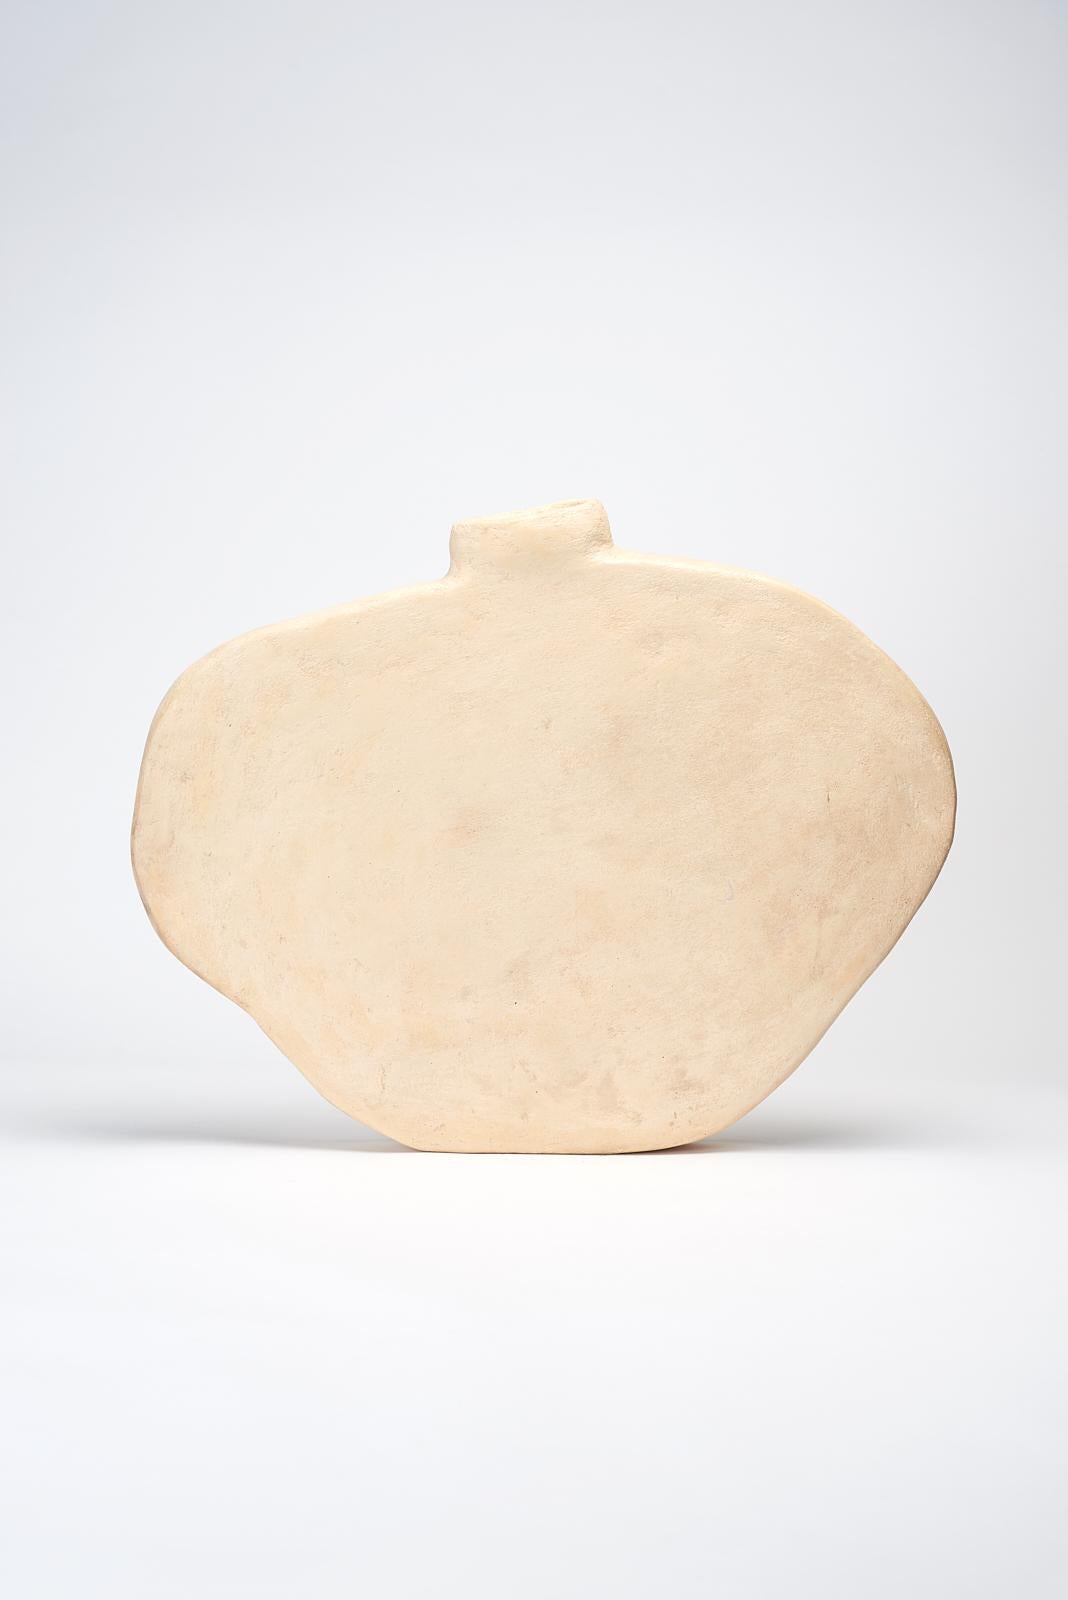 Blanco-Vase von Willem Van Hooff
Kerngefäß-Serie
Abmessungen: B 62 x T 10 x H 53 cm (Die Abmessungen können variieren, da es sich um handgefertigte Stücke handelt, die leichte Größenabweichungen aufweisen können)
MATERIALIEN: Steingut, Keramik,